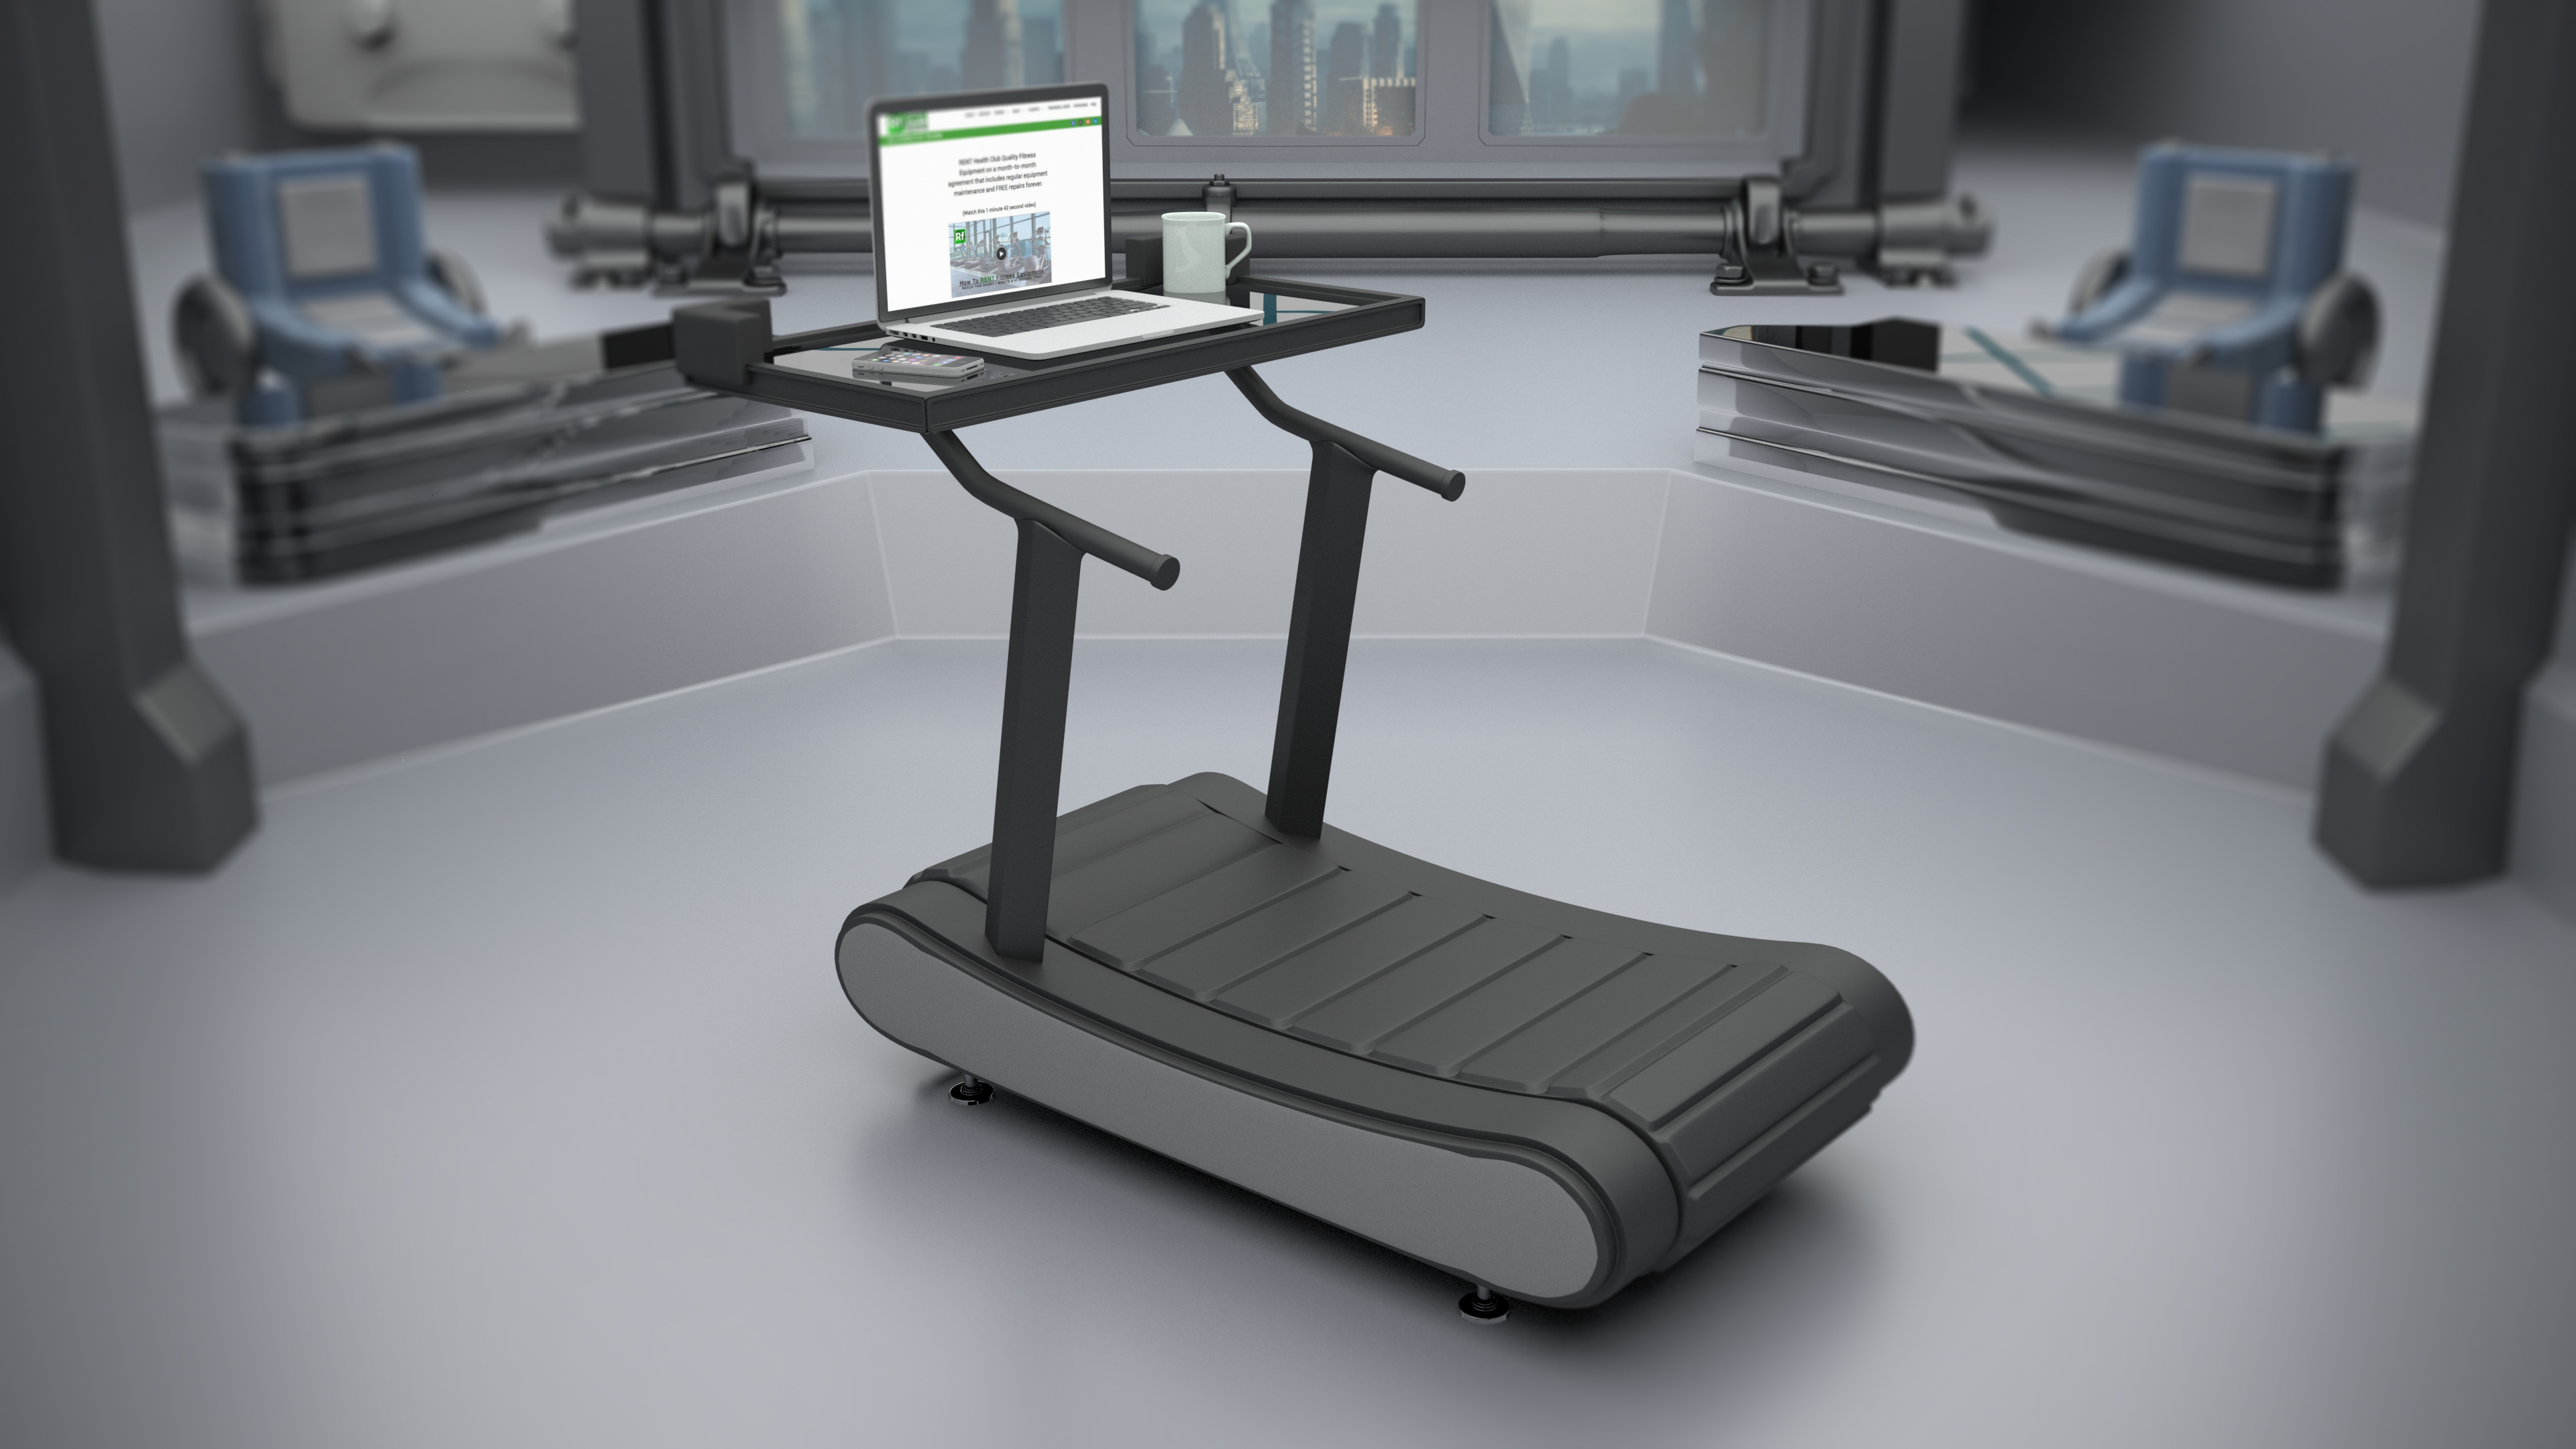 treadmill desk